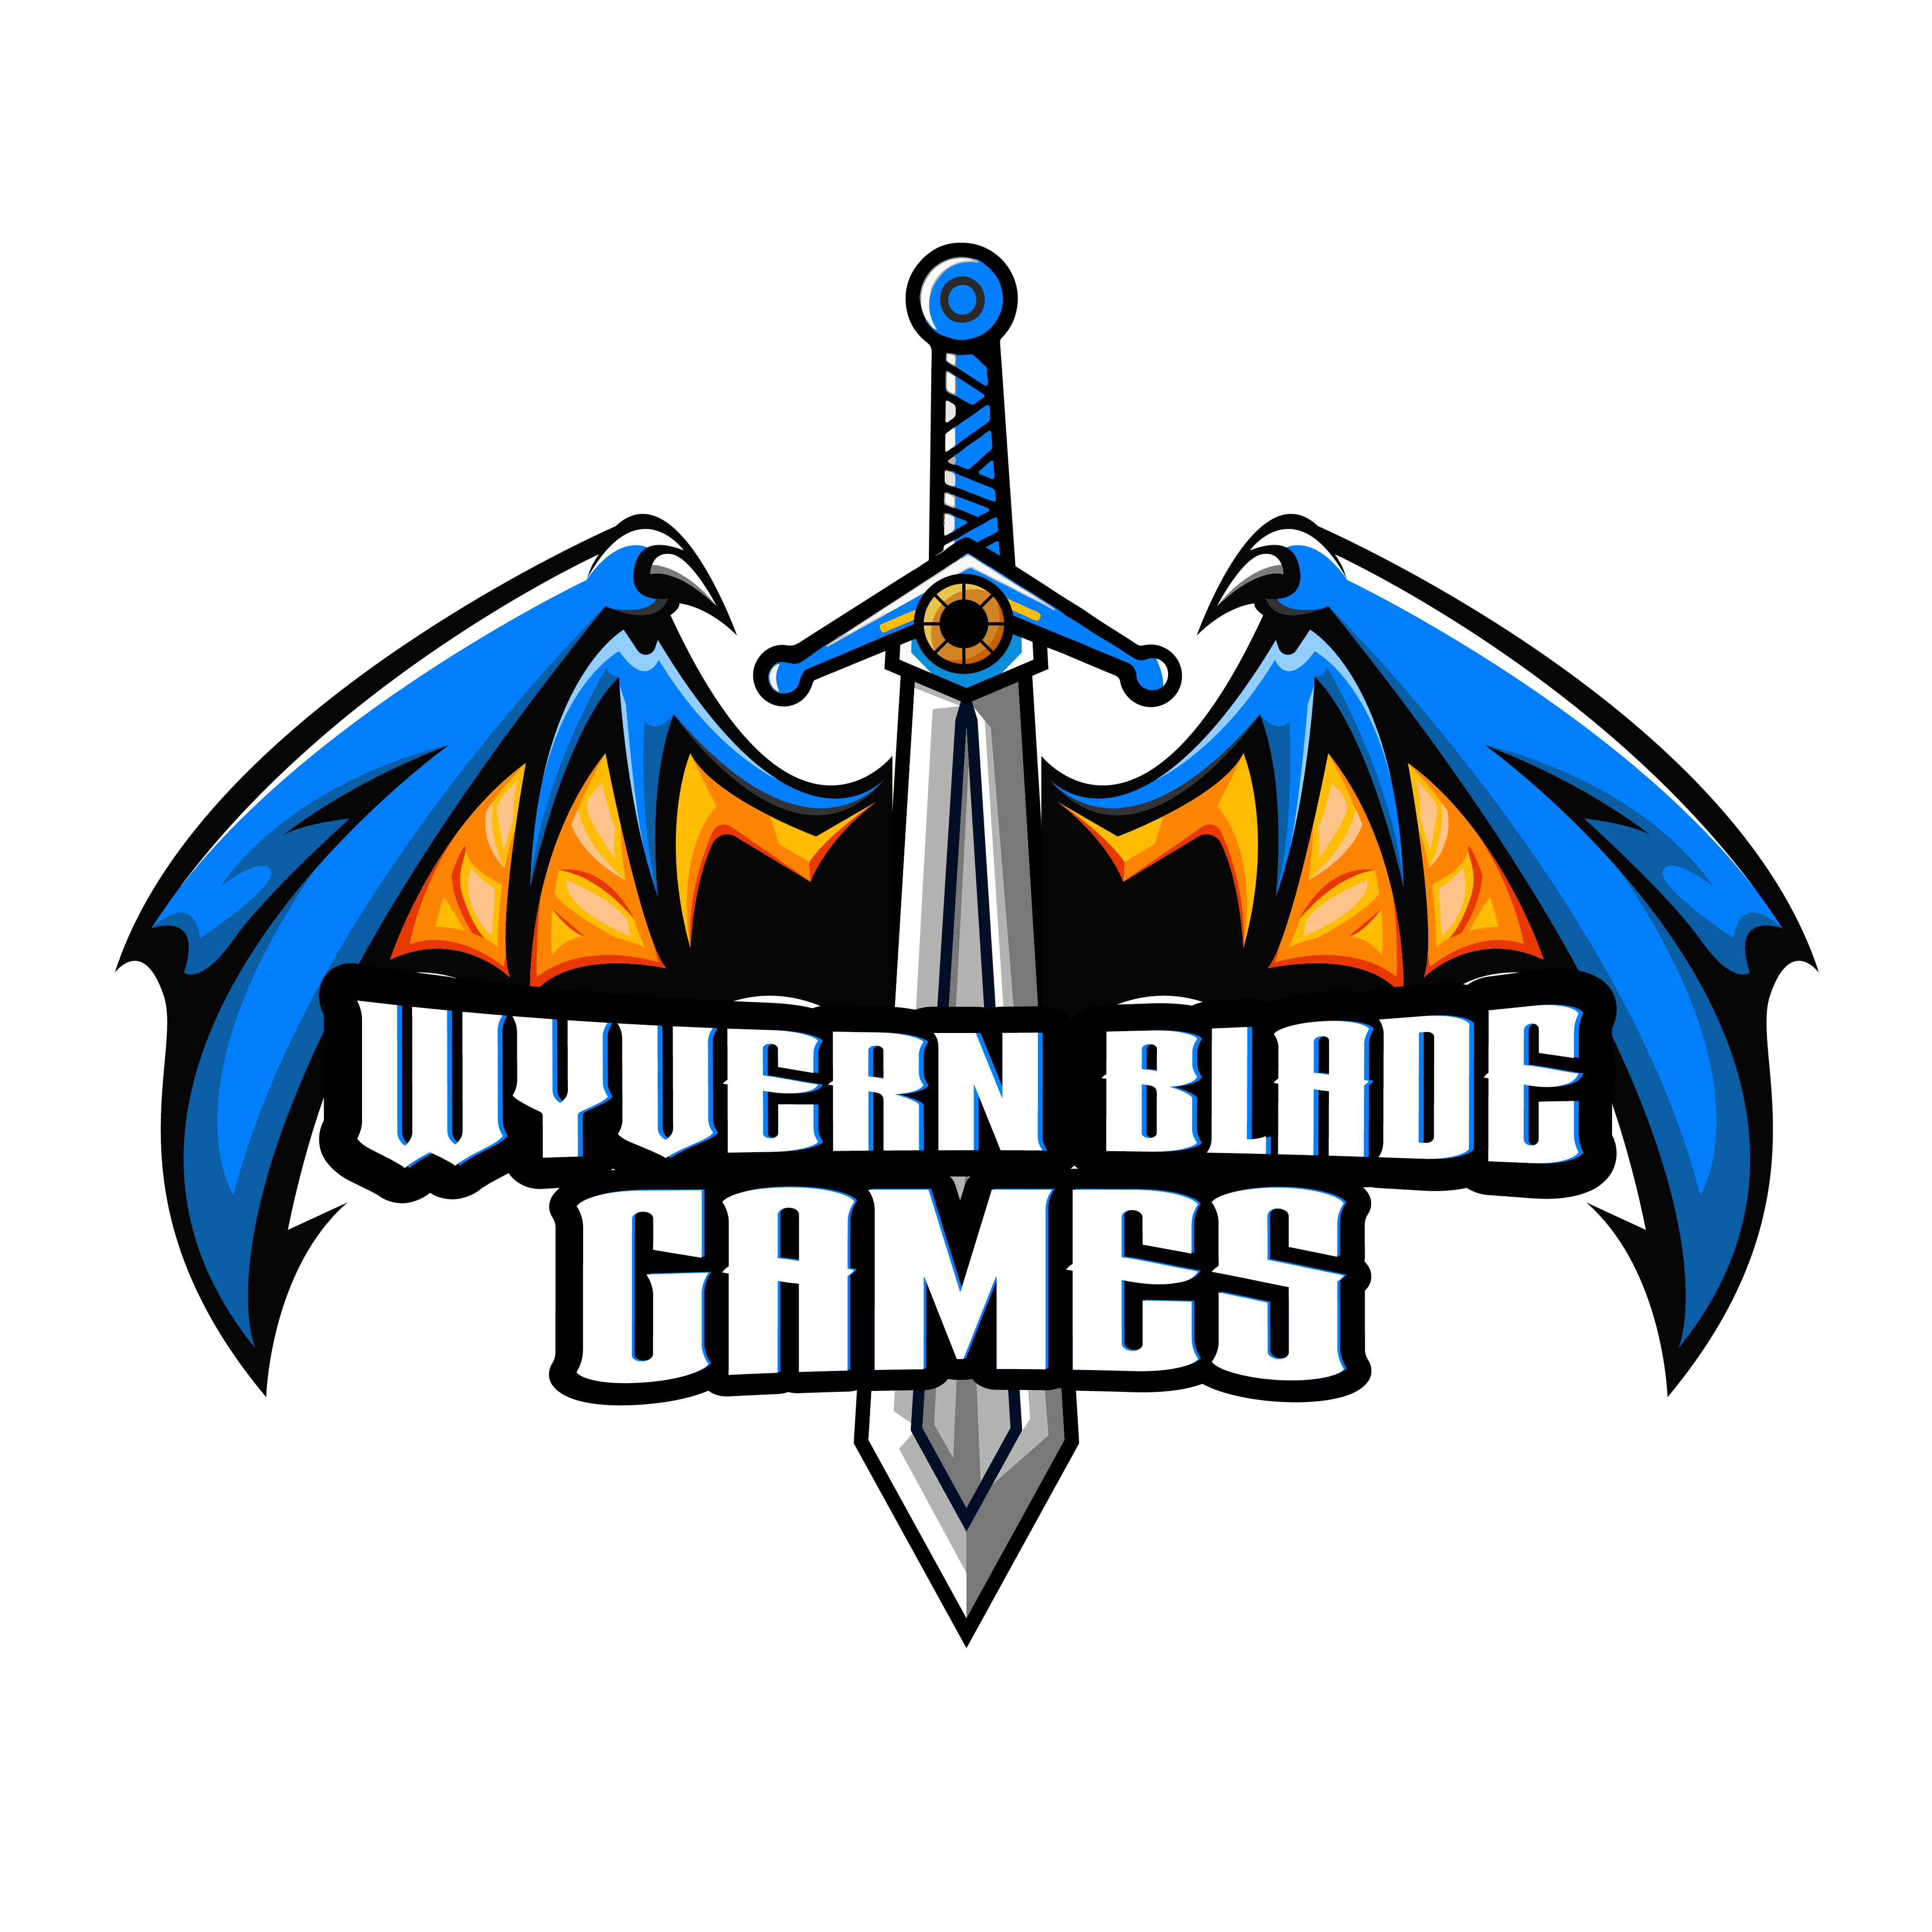 Wyvern Blade Games